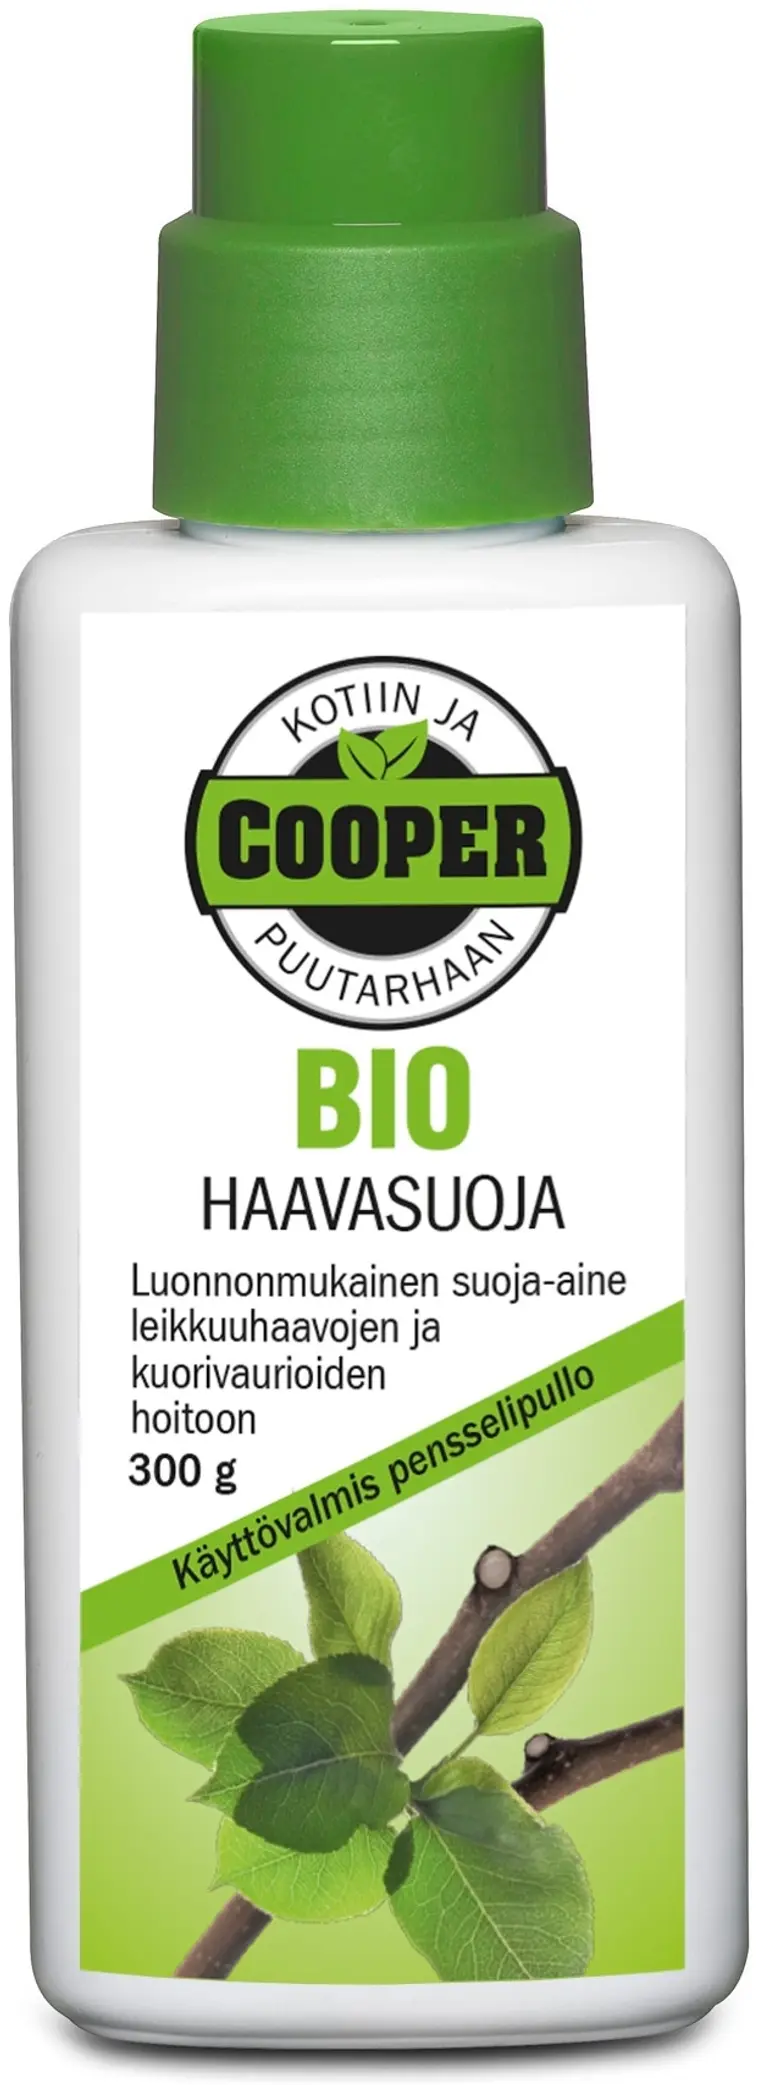 Cooper Haavasuoja 300 g